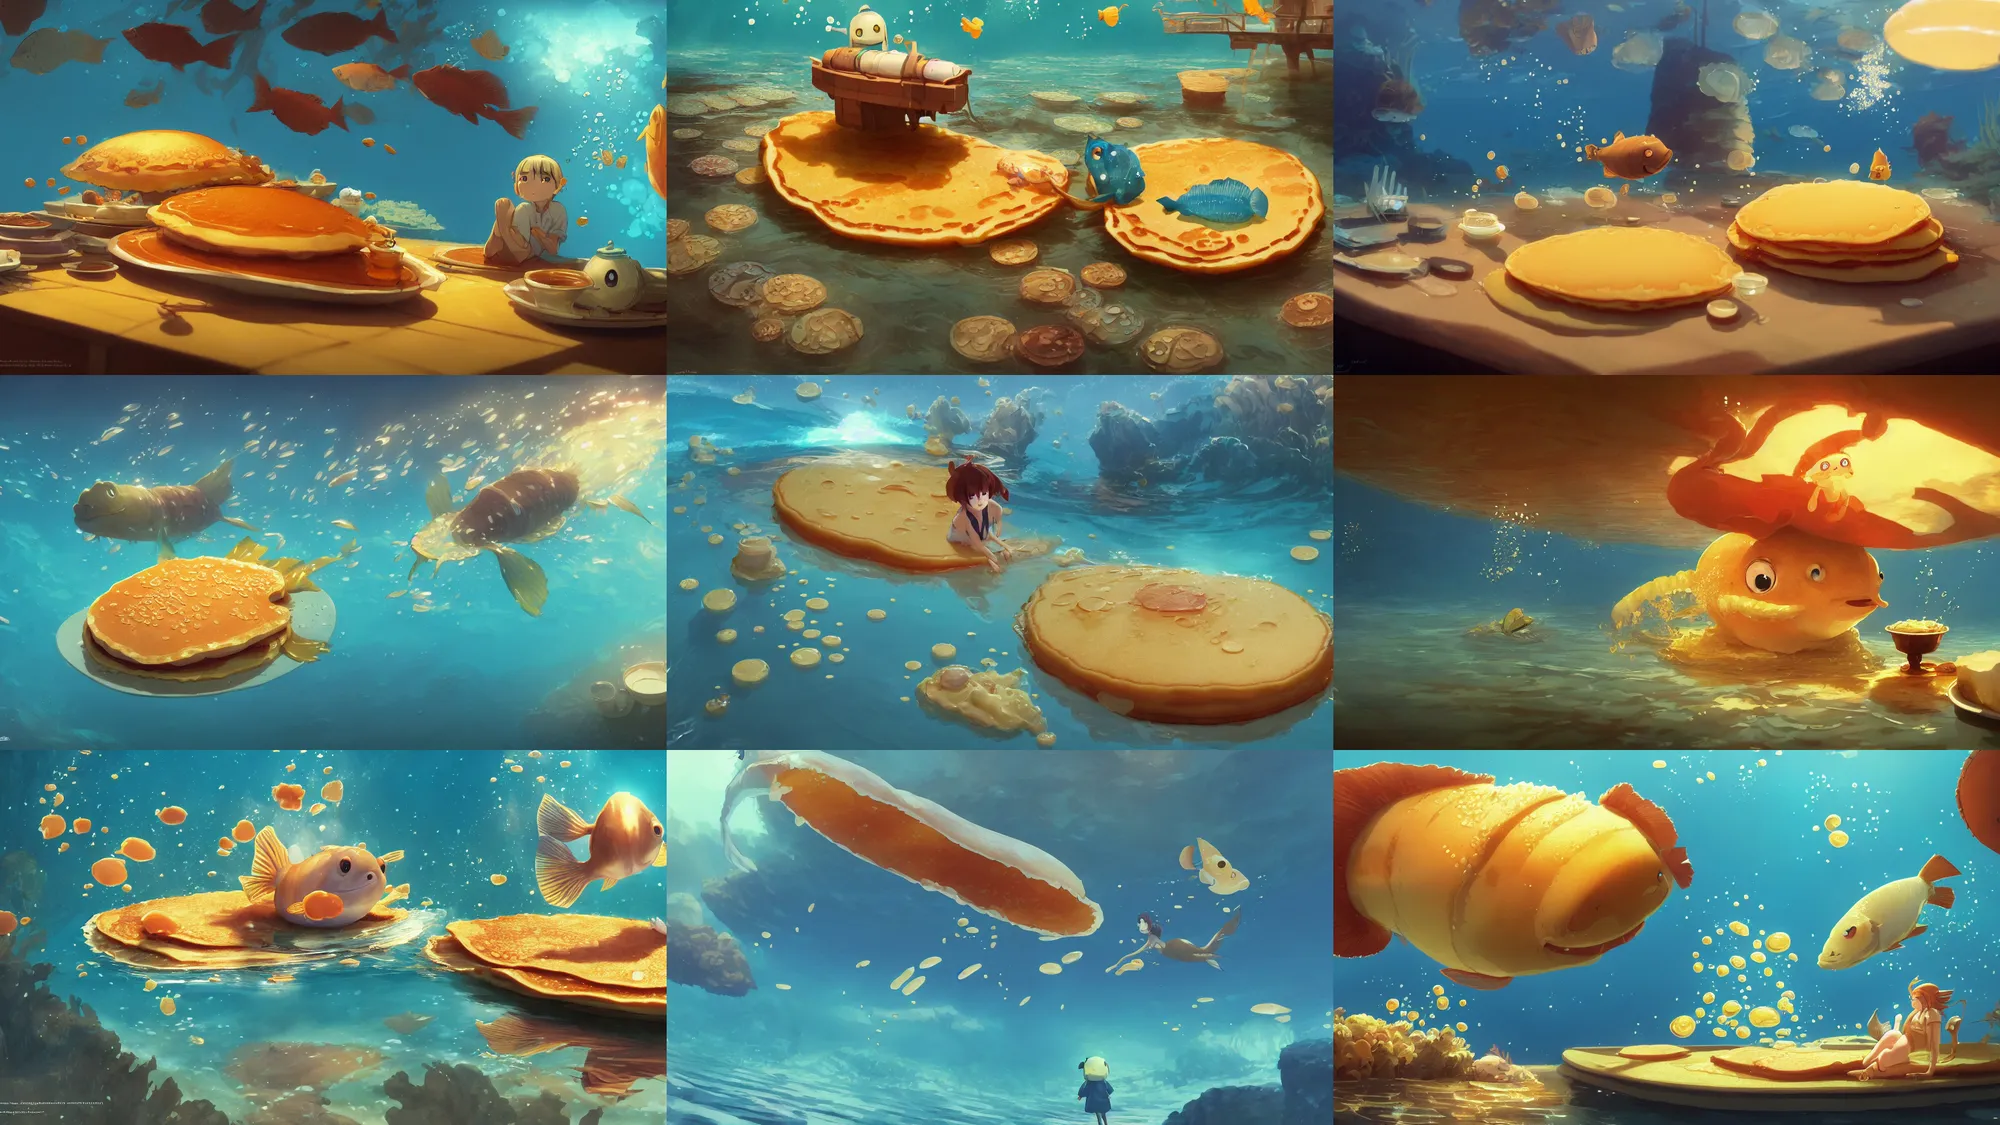 Prompt: digital underwater art of a happy flat pancake fish swimming in syrup, cute, 4 k, fish made of pancake, fantasy food world, living food adorable pancake, brown atmospheric lighting, by makoto shinkai, studio ghibli, greg rutkowski, ross tran